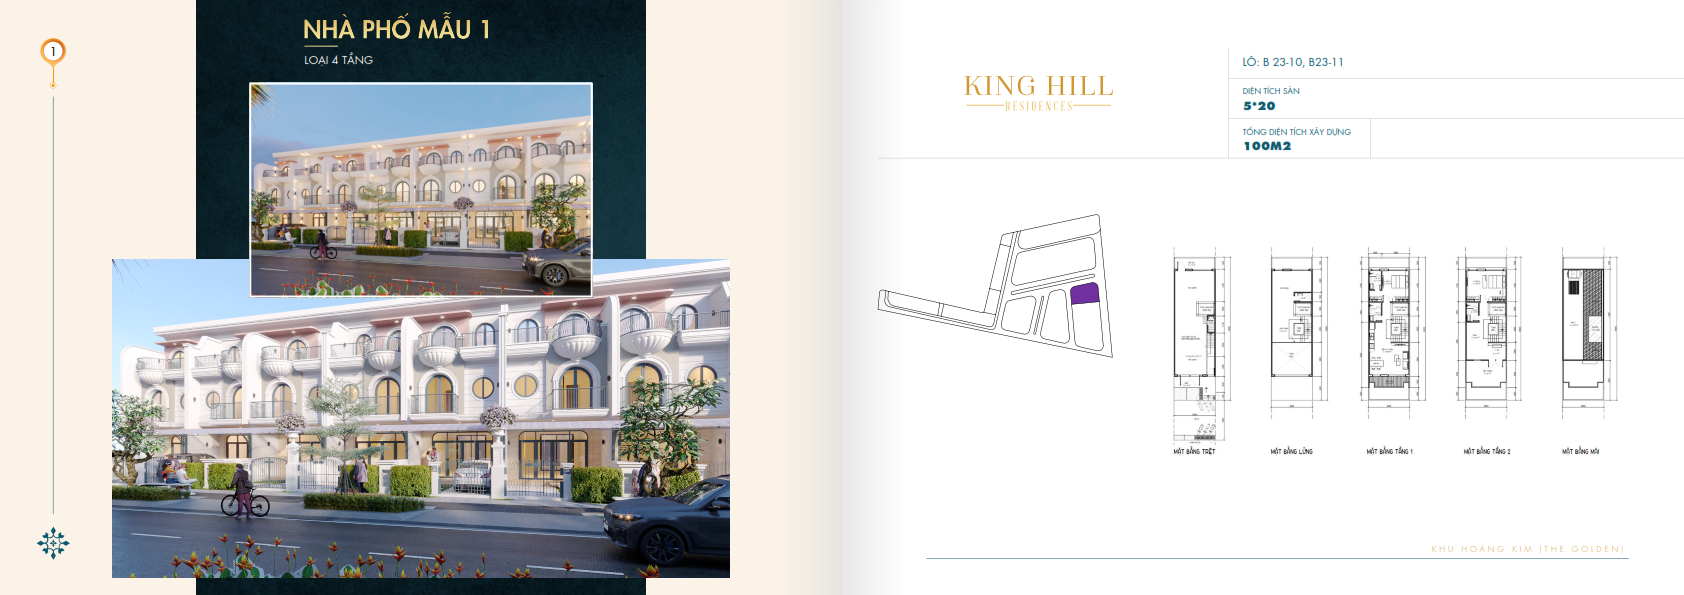 Nha pho mau 1 loai 4 tang Du an King Hill Residences - King Hill Residences